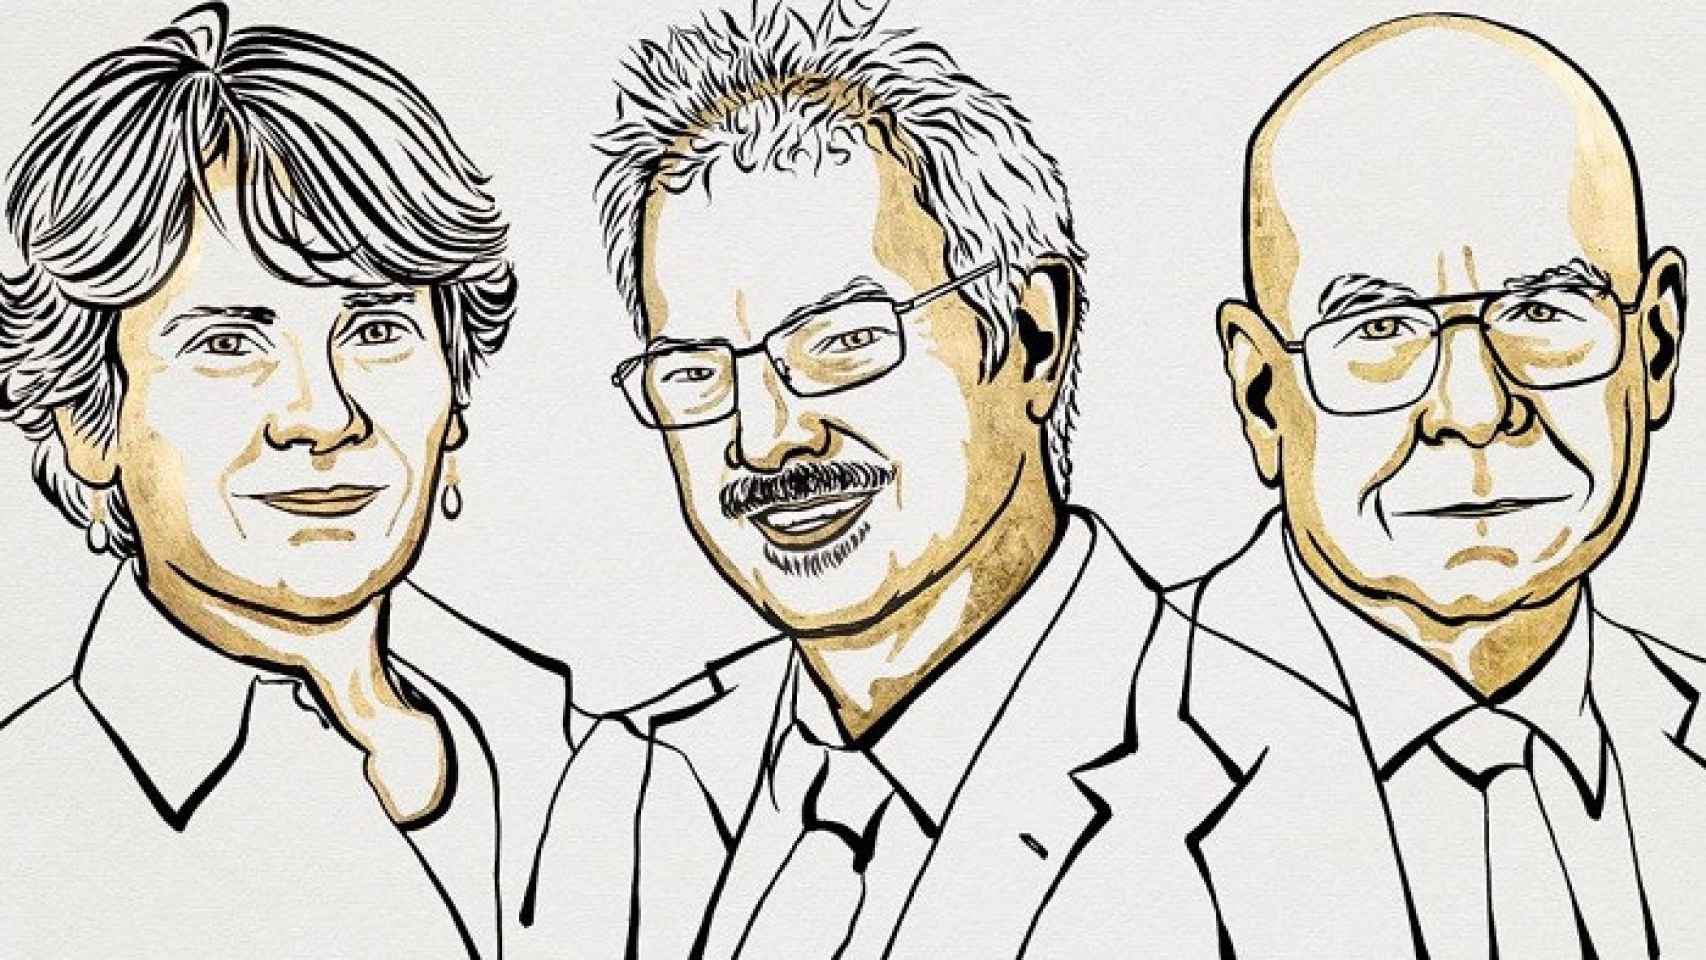 Los Nobel de Química 2022 Carolyn R. Bertozzi, Morten Meldal y Karl Barry Sharpless. Ilustración:  Niklas Elmehed / Nobel Prize Outreach